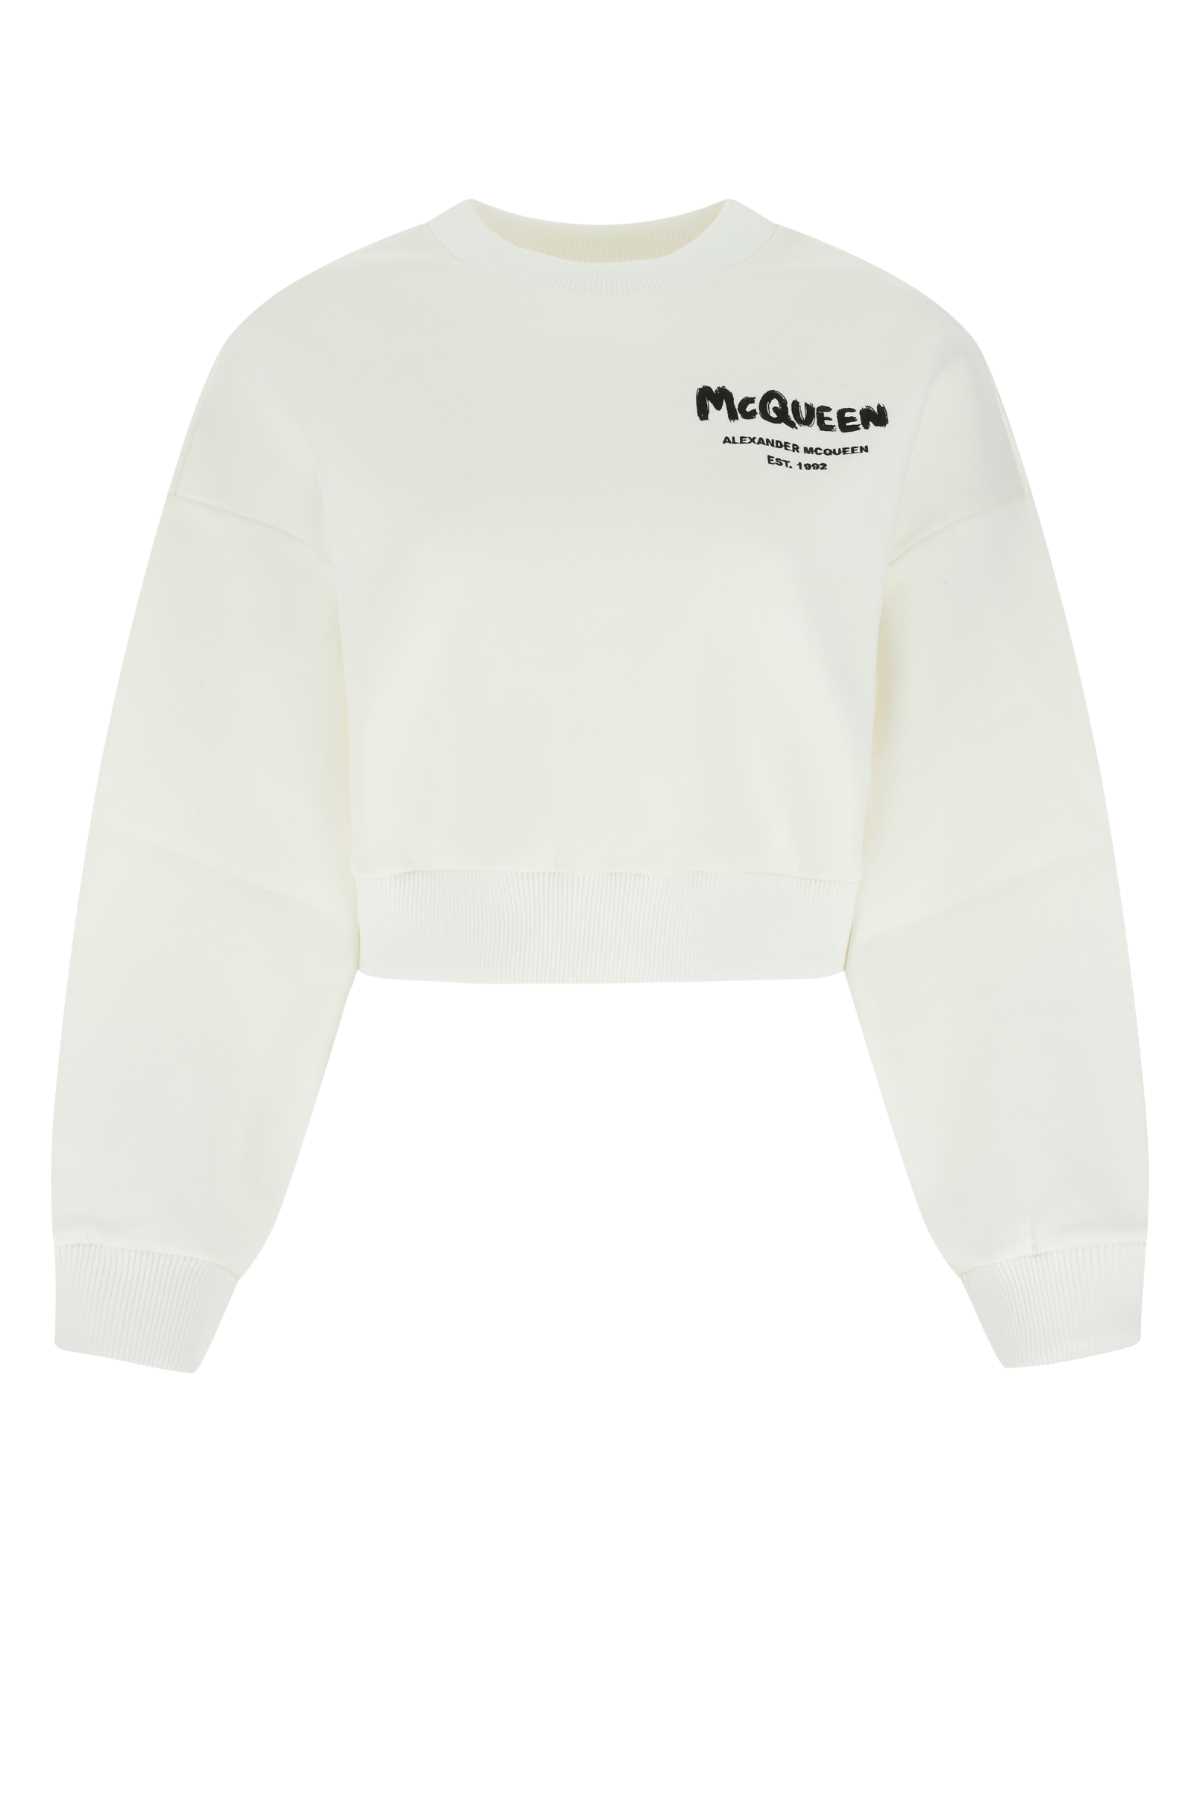 Alexander Mcqueen White Cotton Blend Sweatshirt In 9000